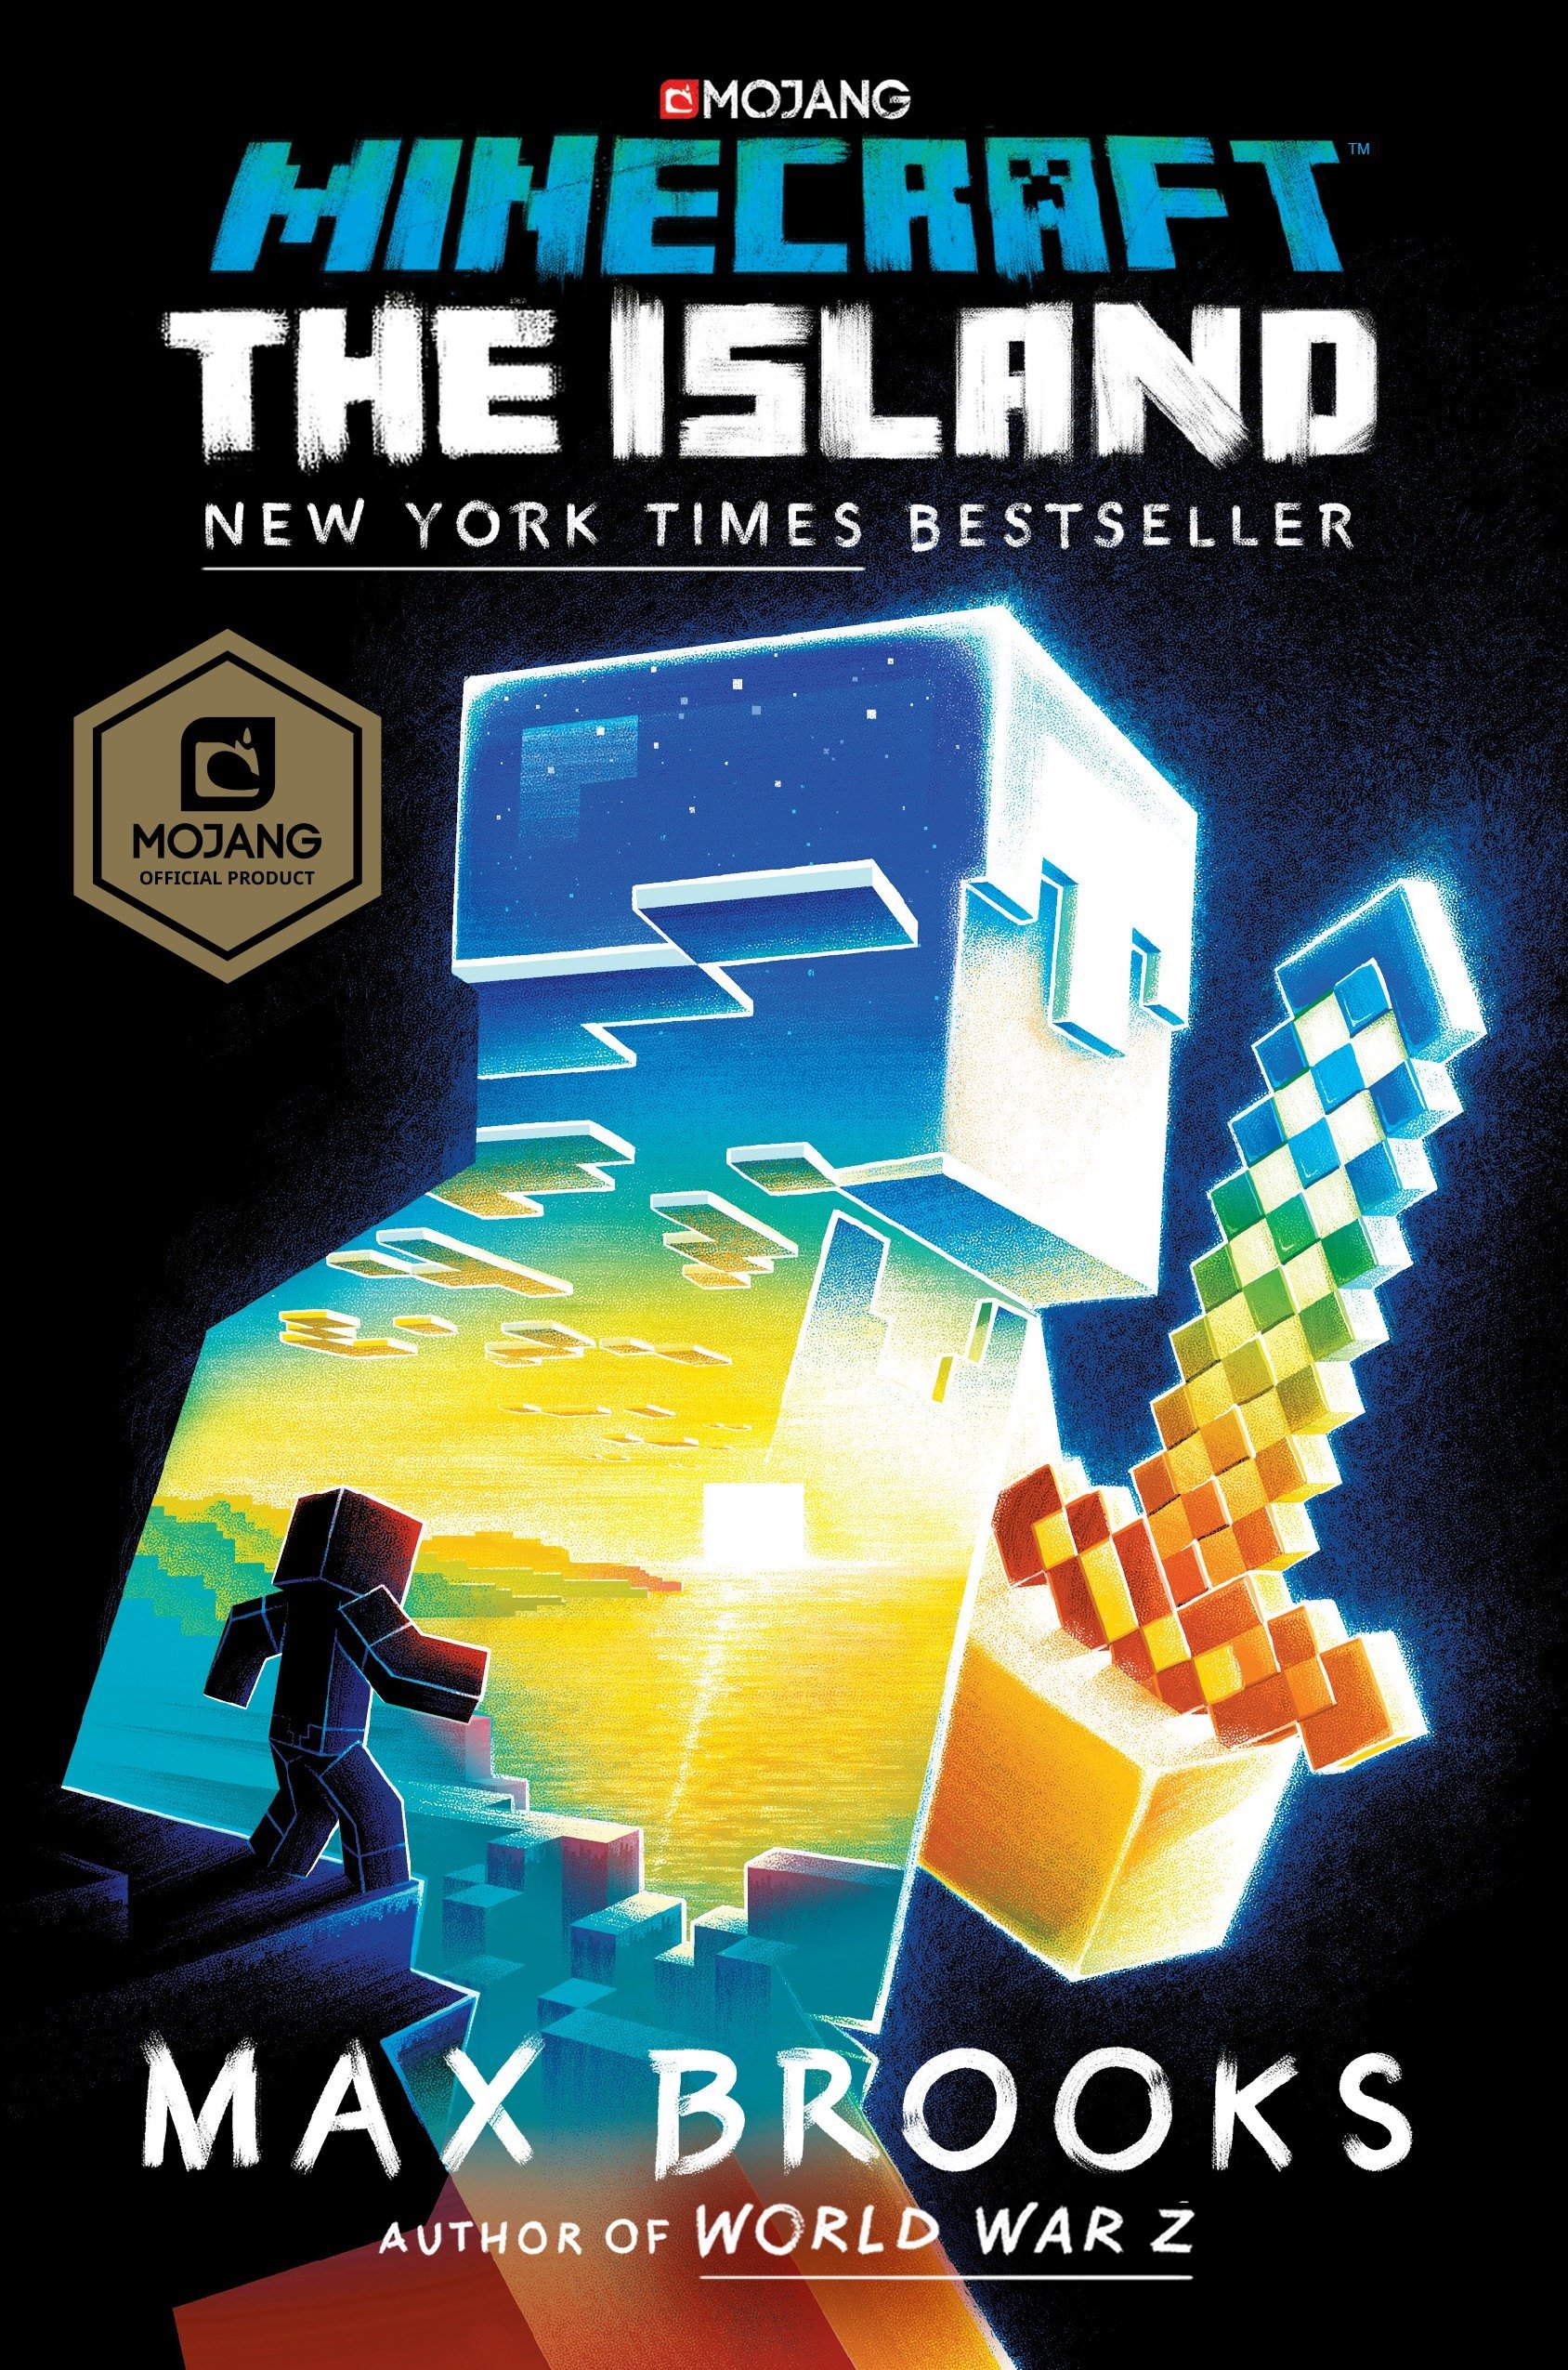 Novo 'Minecraft' amplia franquia para novos gêneros, com mais ação -  02/06/2020 - Ilustrada - Folha